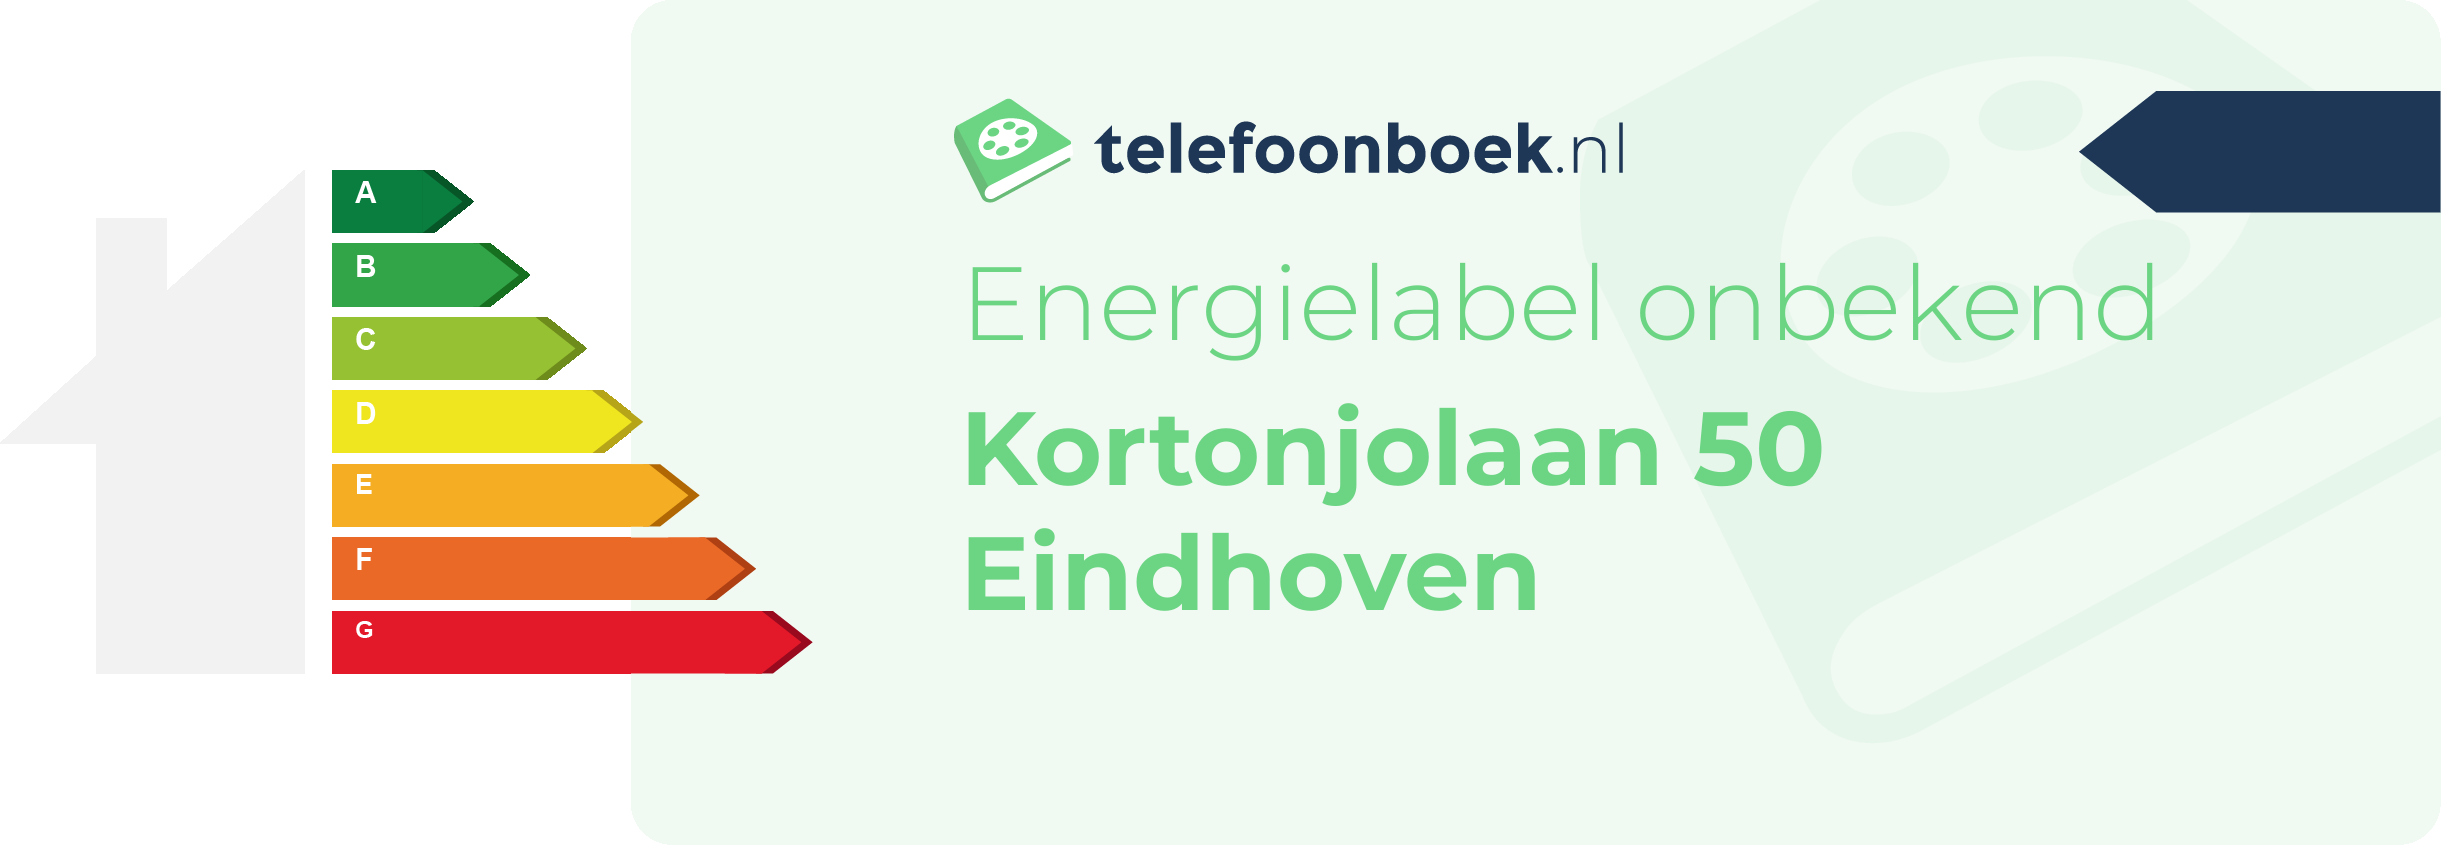 Energielabel Kortonjolaan 50 Eindhoven